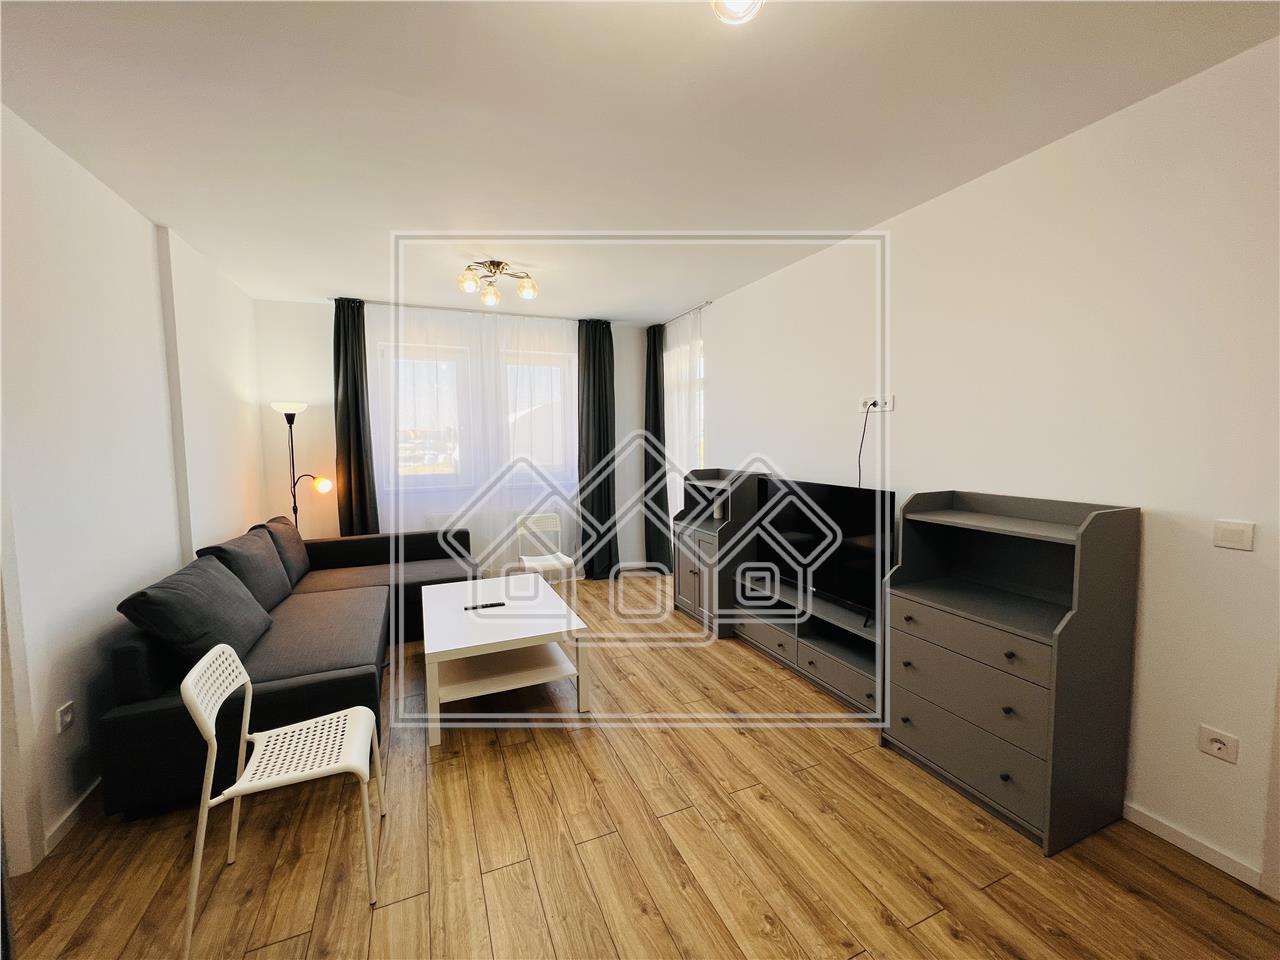 Wohnung zur Miete in Sibiu - Neubau - m?bliert und ausgestattet